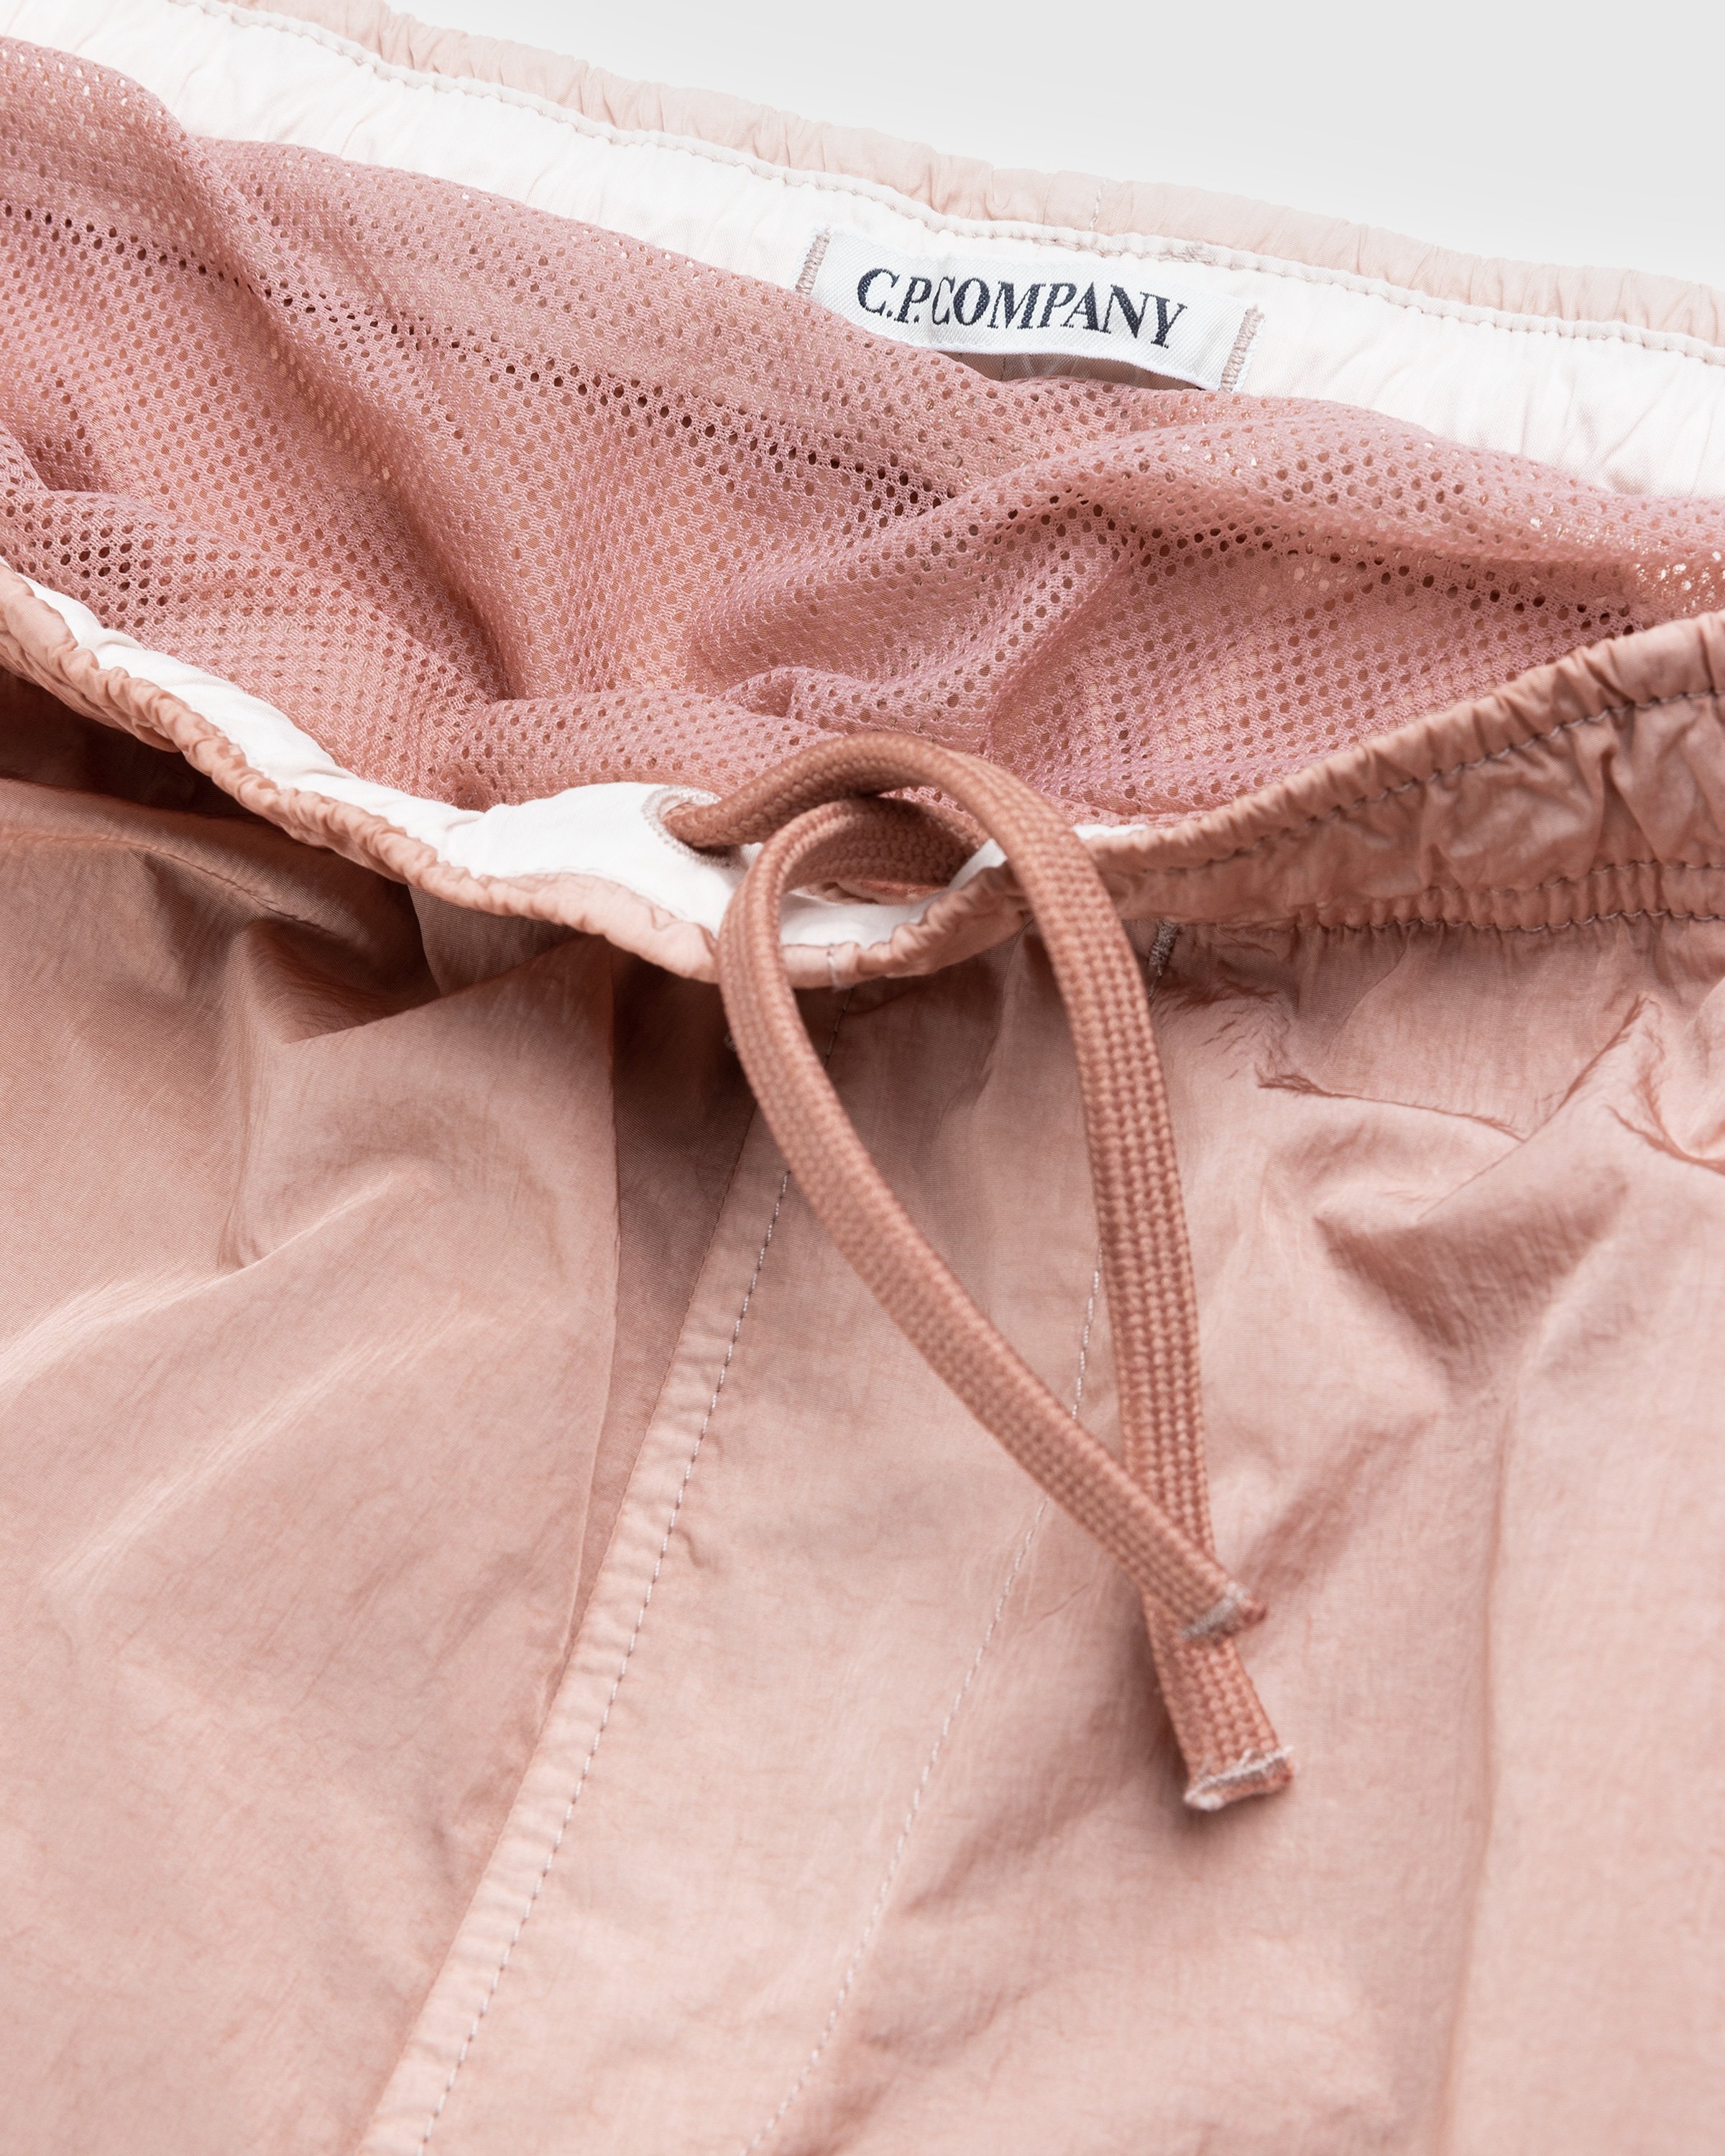 C.P. Company - Eco-Chrome Swim Shorts Pink - Clothing - Pink - Image 5